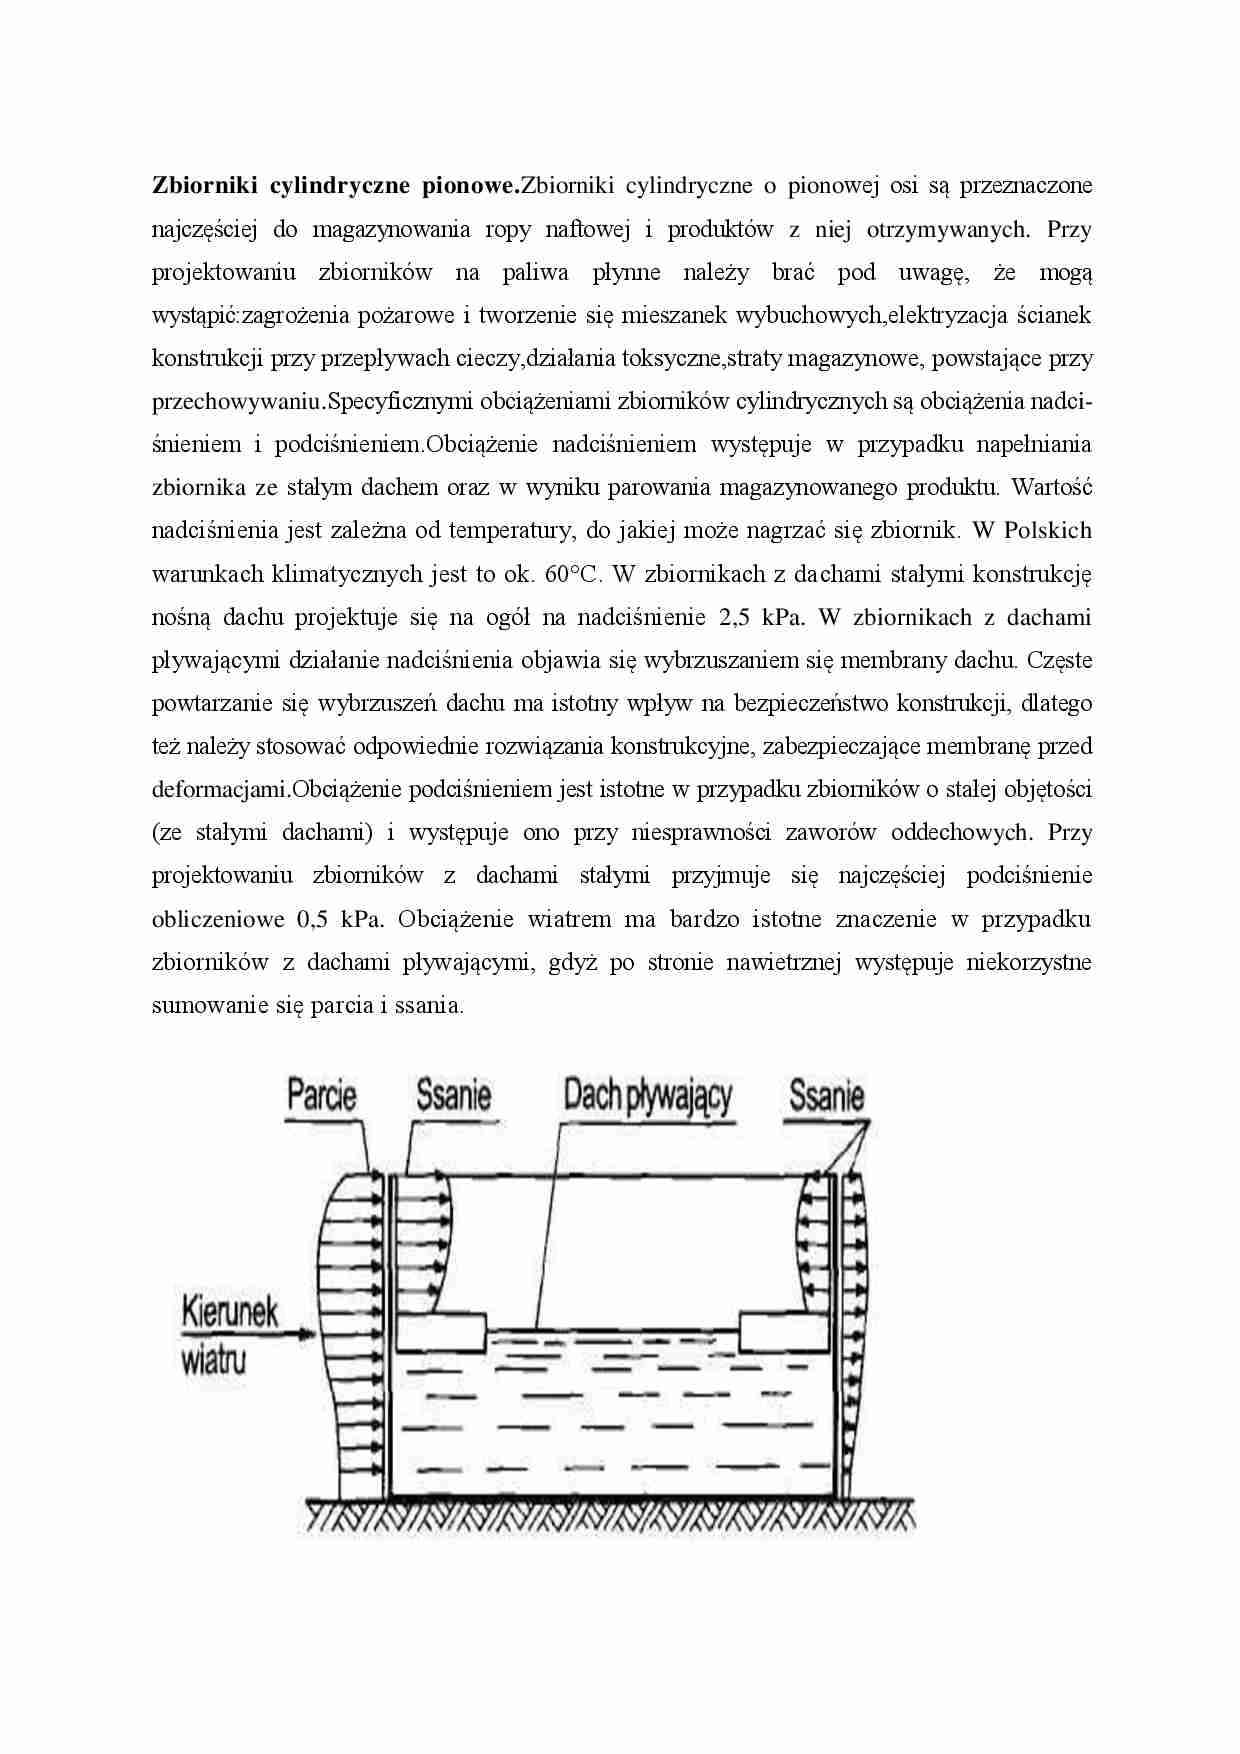 Zbiorniki cylindryczne pionowe - strona 1